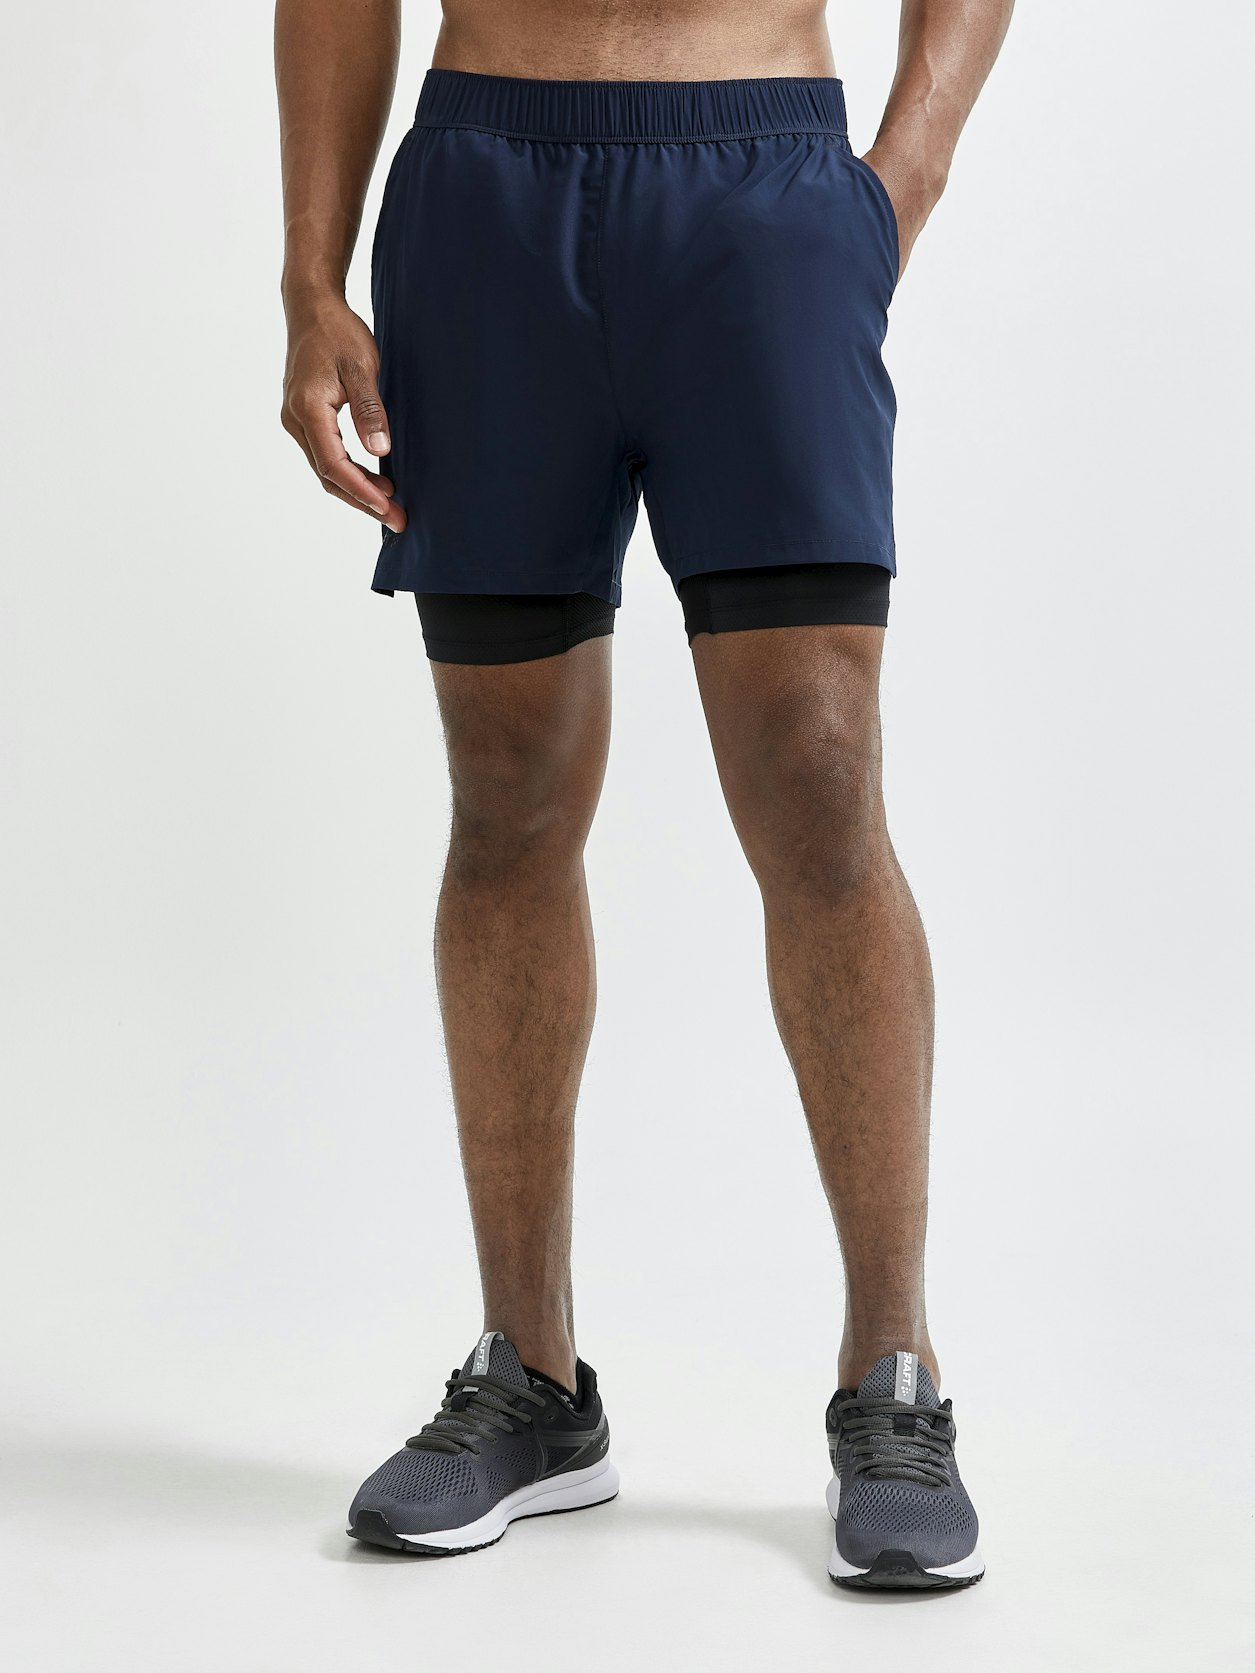 ADV Essence 2-in-1 Stretch Shorts M - Navy blue | Craft Sportswear